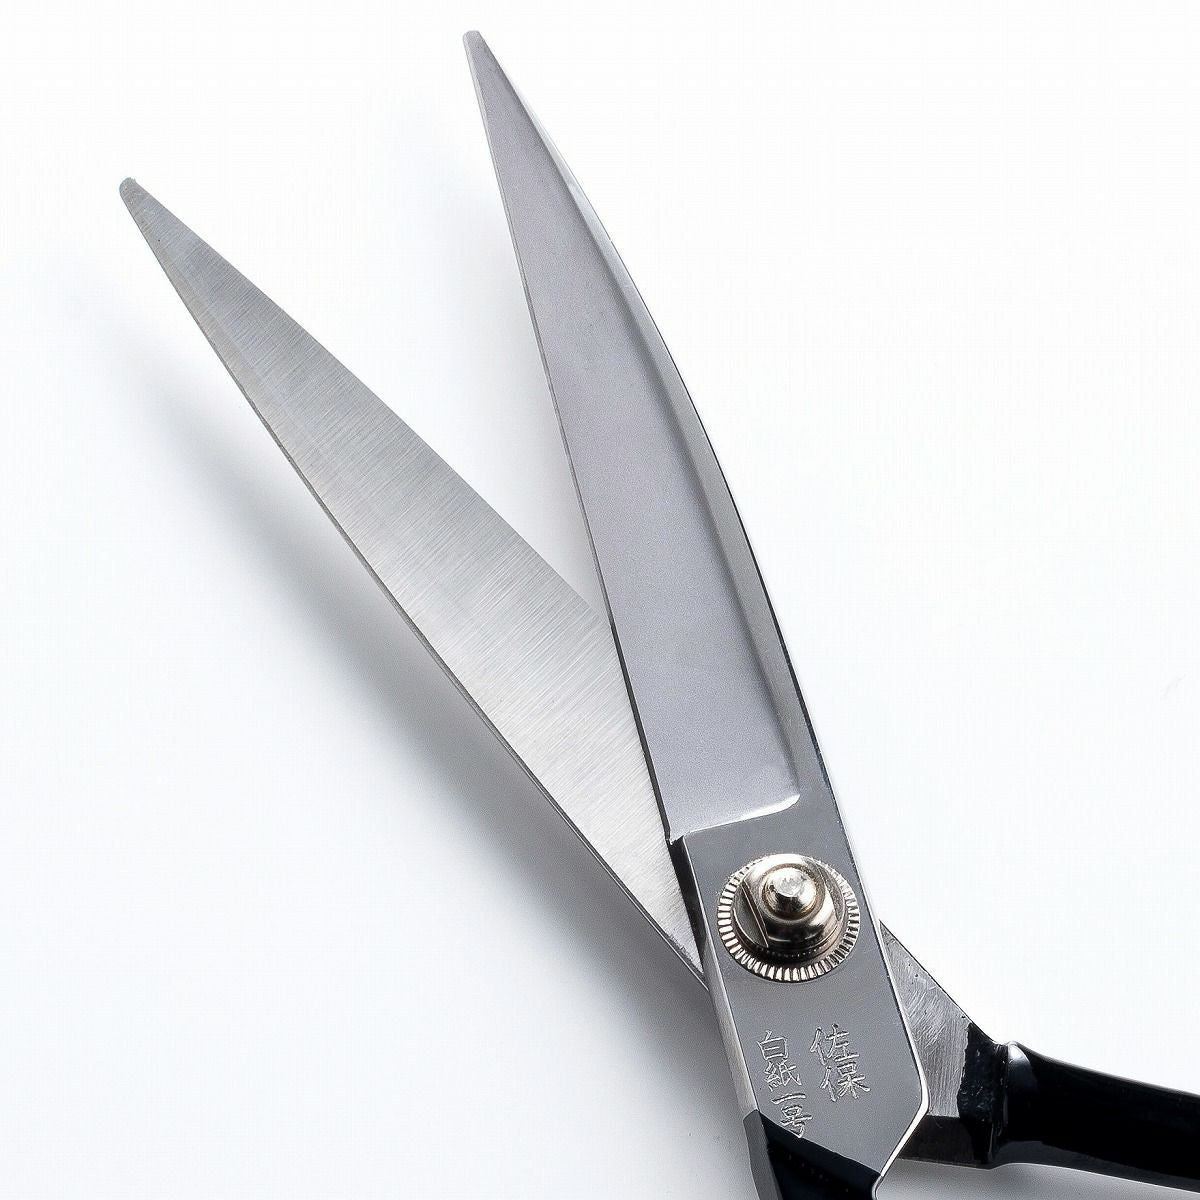 HONMAMON "SAHO" Edge : Shirogami 1, Whole Length : 240mm(abt 9.4") Sewing Scissors (Dressmaker's Shears) For Left Hander